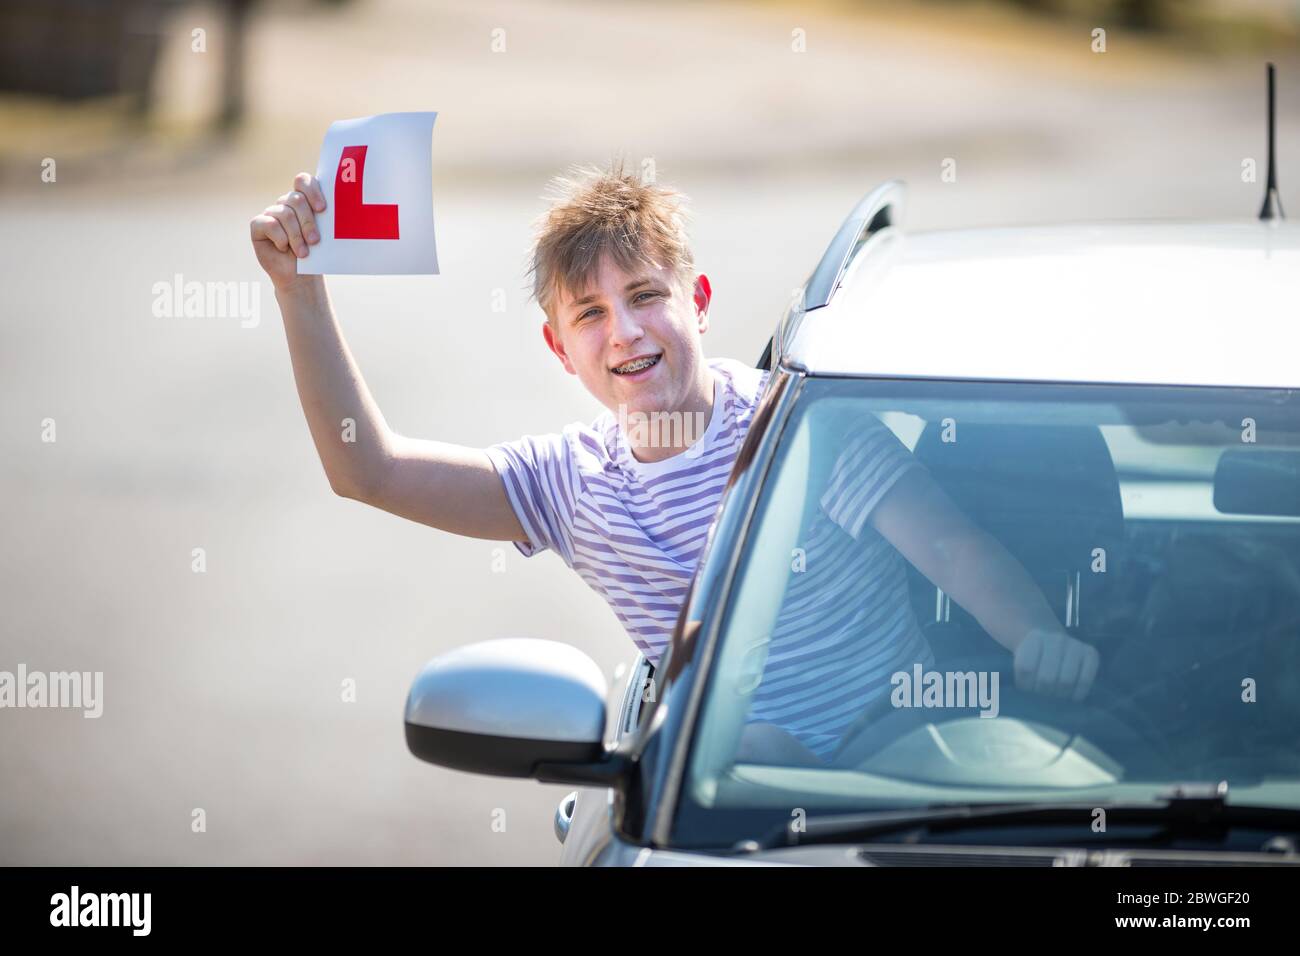 L'allievo teenager driver festeggia il superamento del test di guida sventolando i suoi piatti a L in aria. Foto Stock